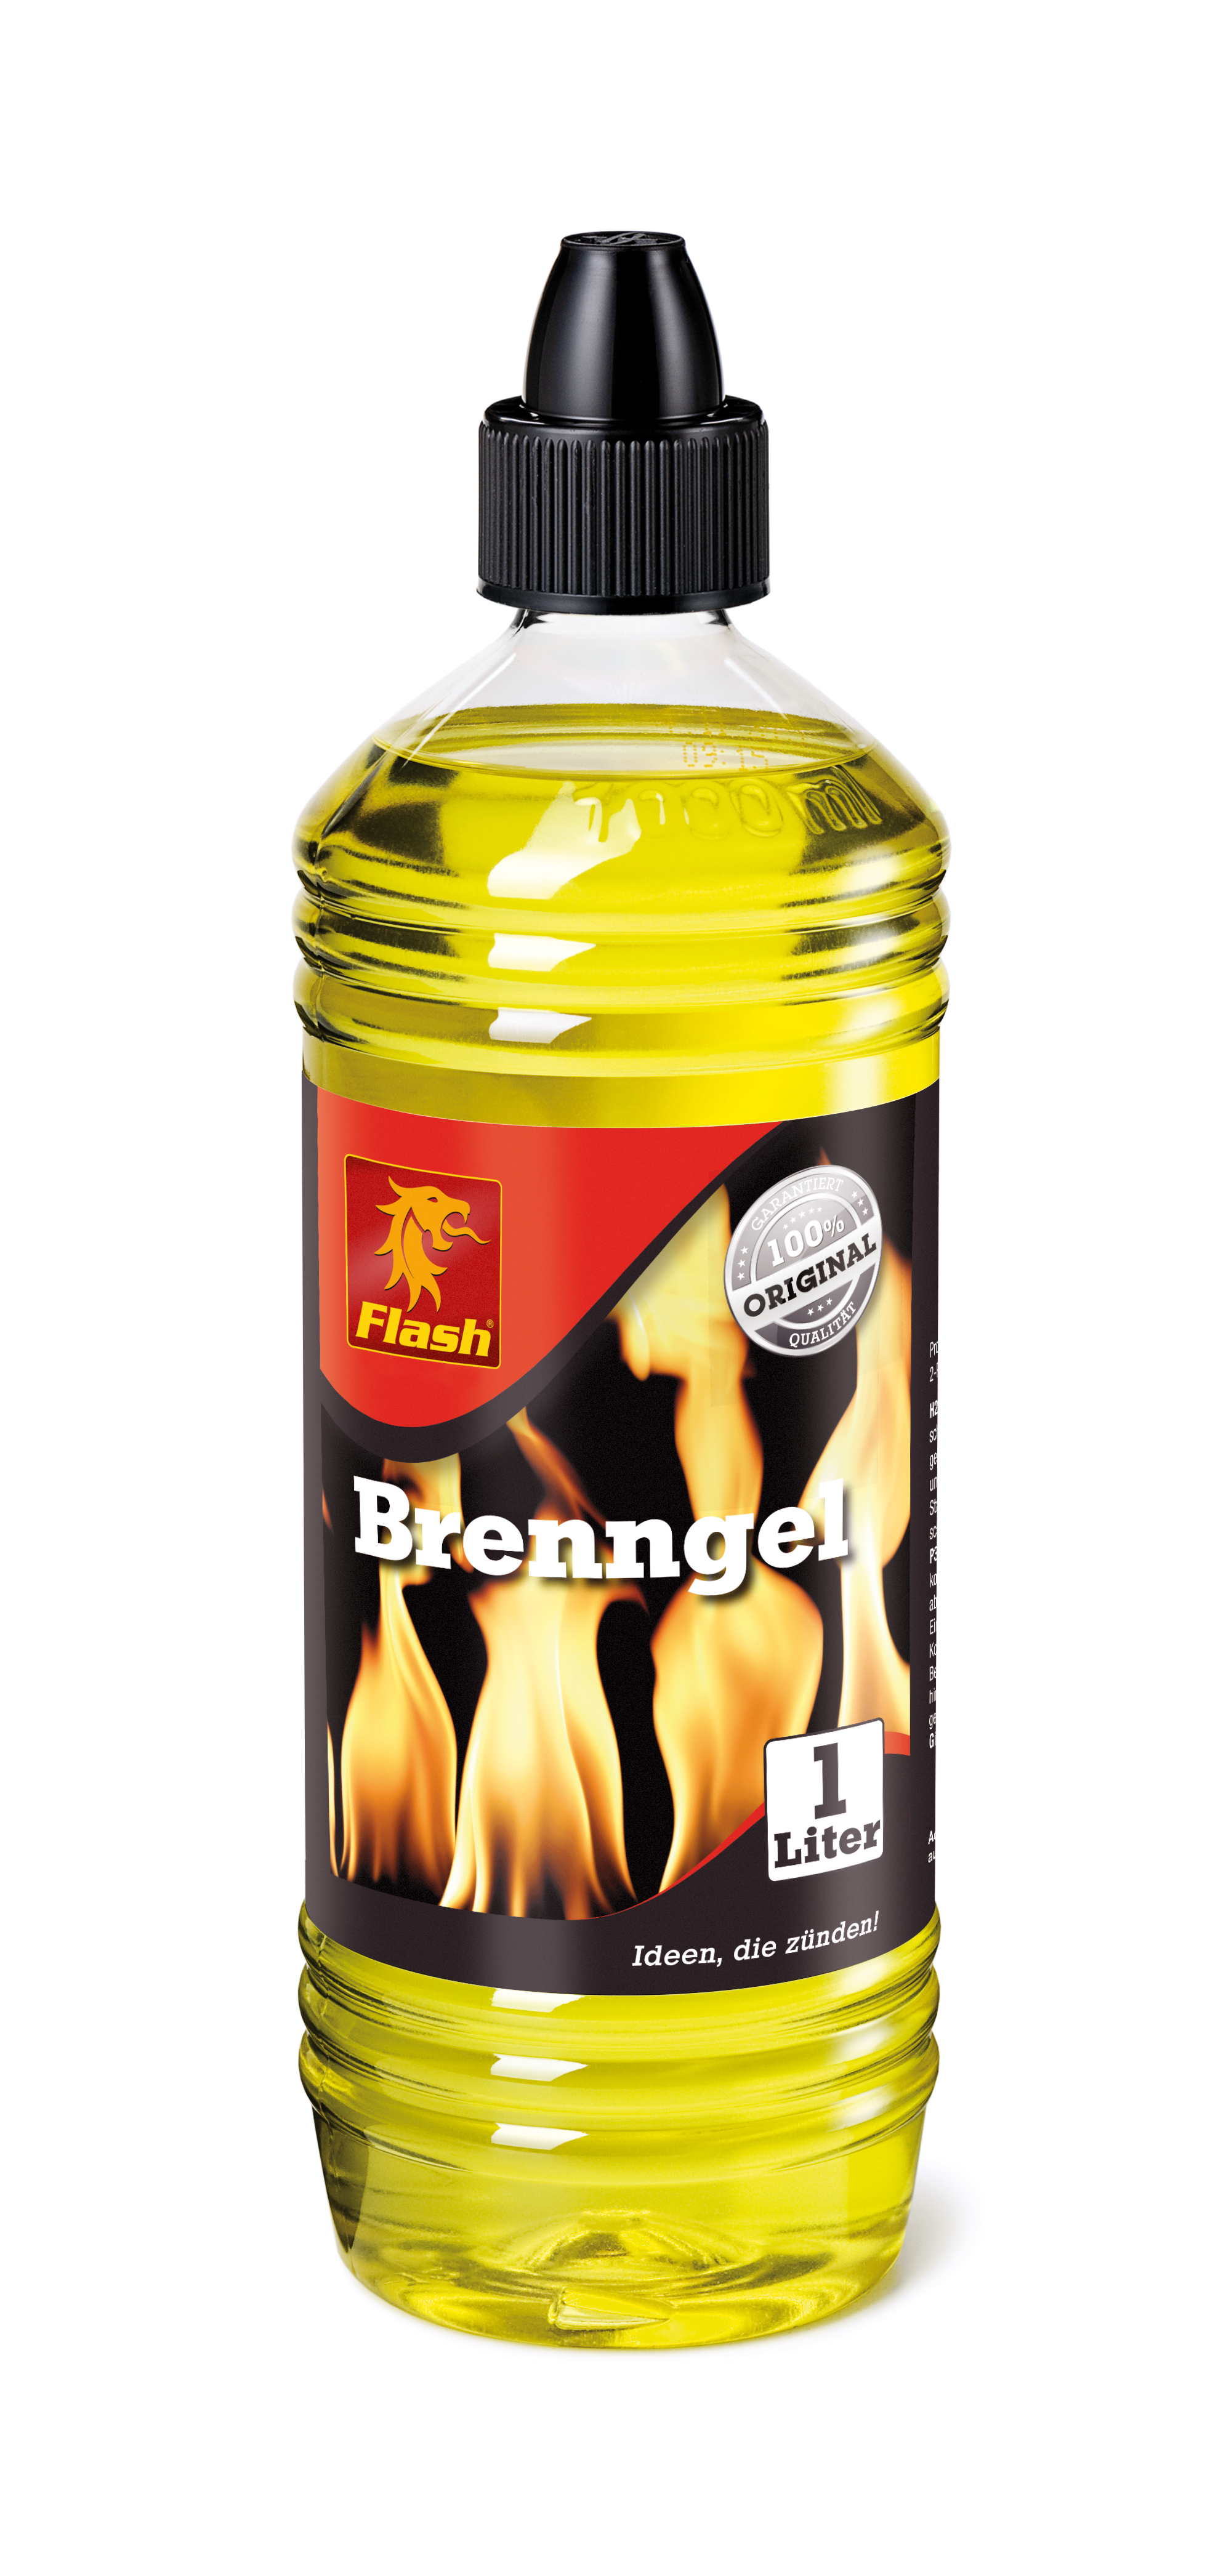 Flash® Brenngel, 1 Liter